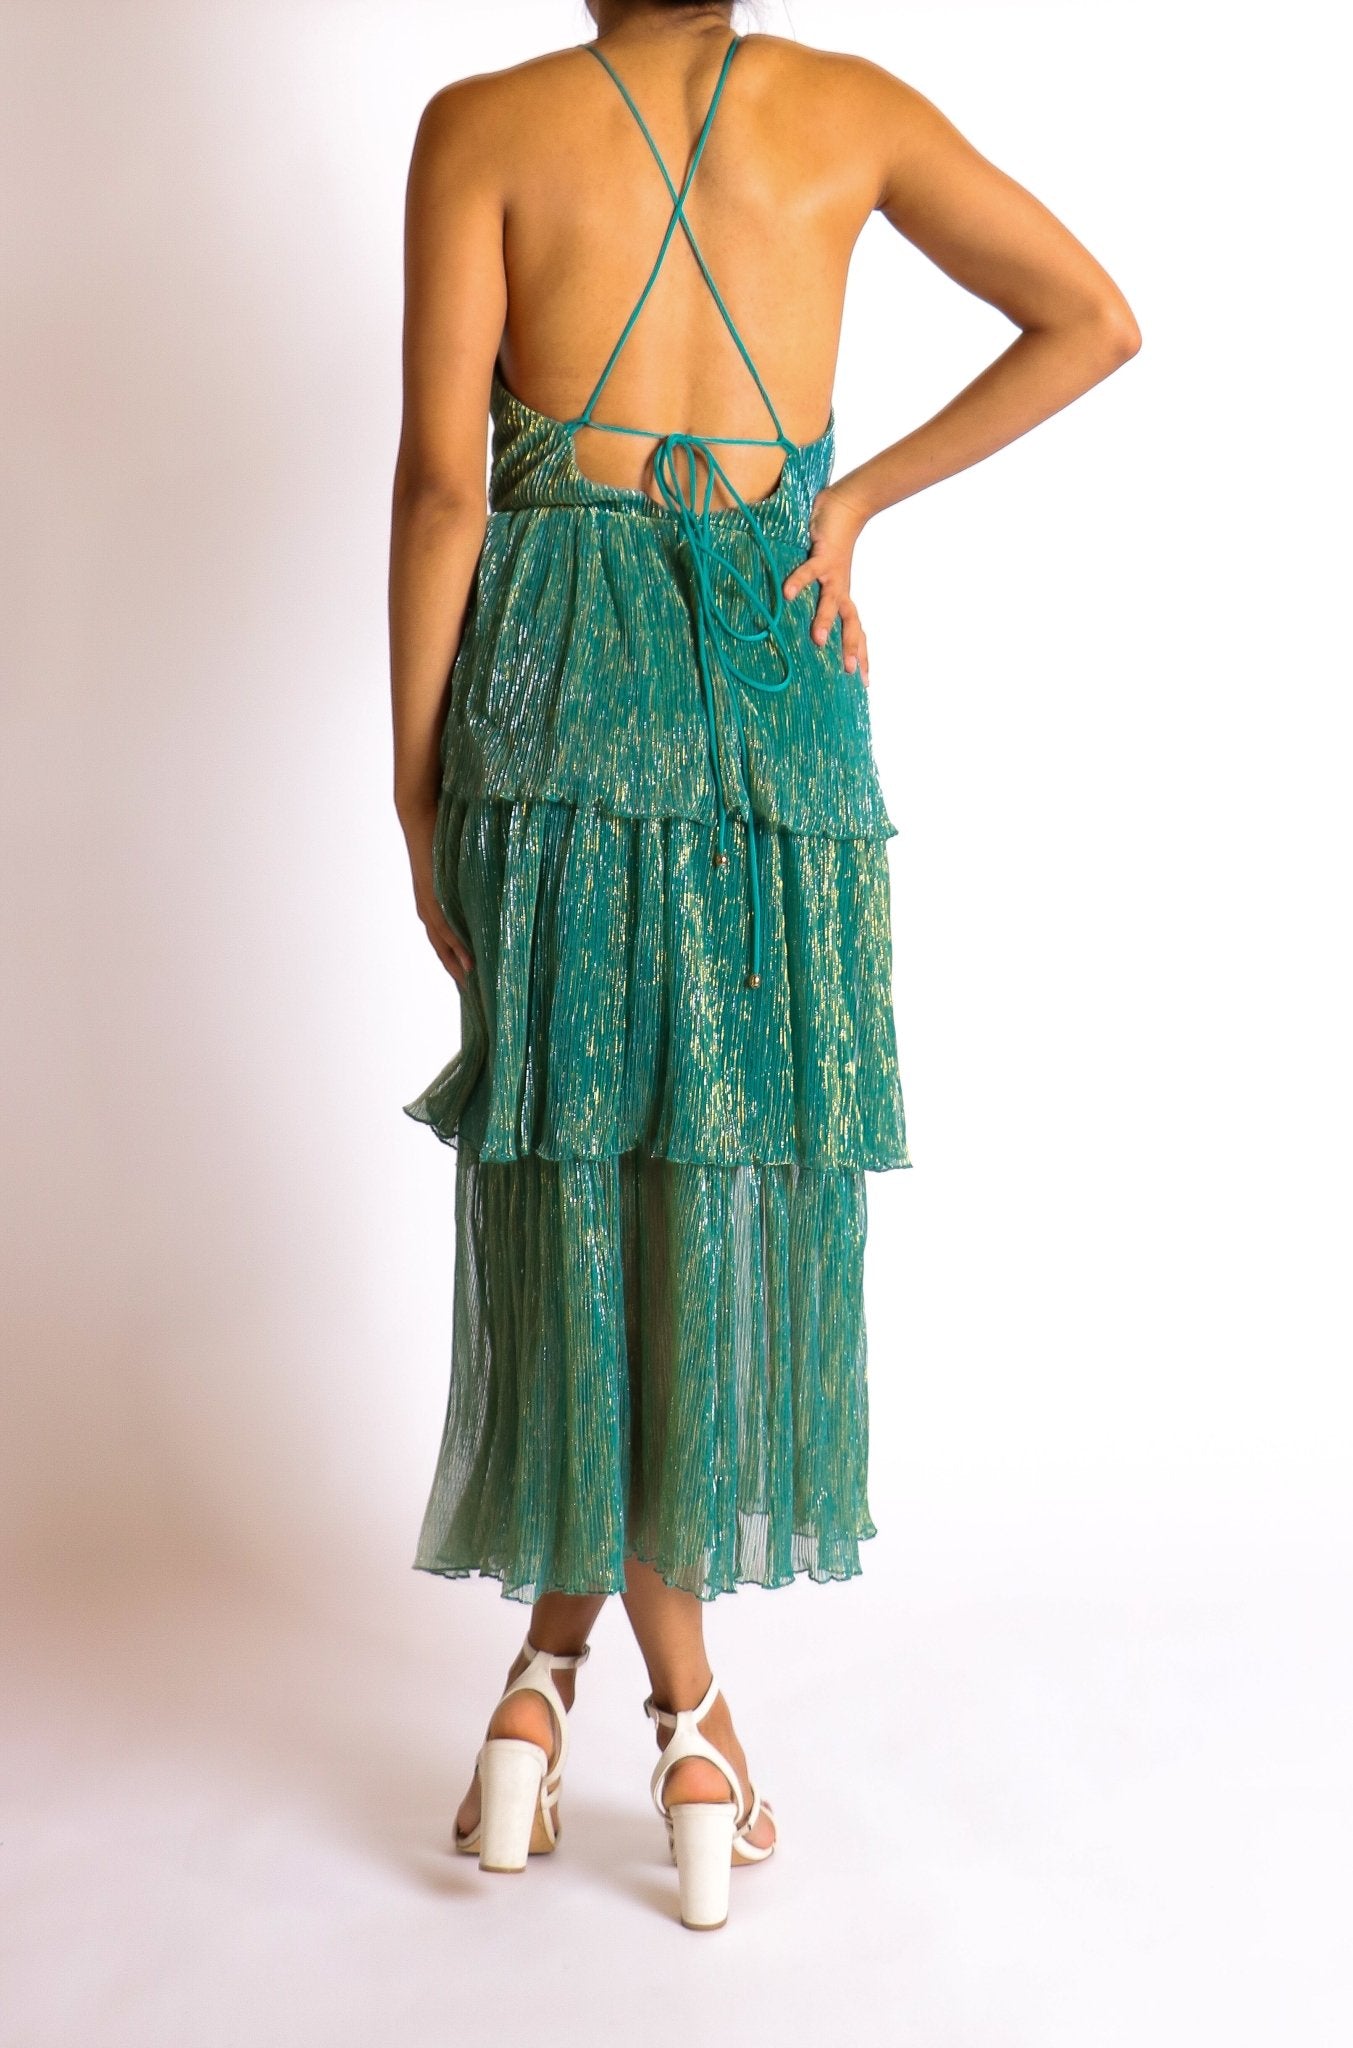 Miriam - venta - Lend the Trend renta de vestidos mexico